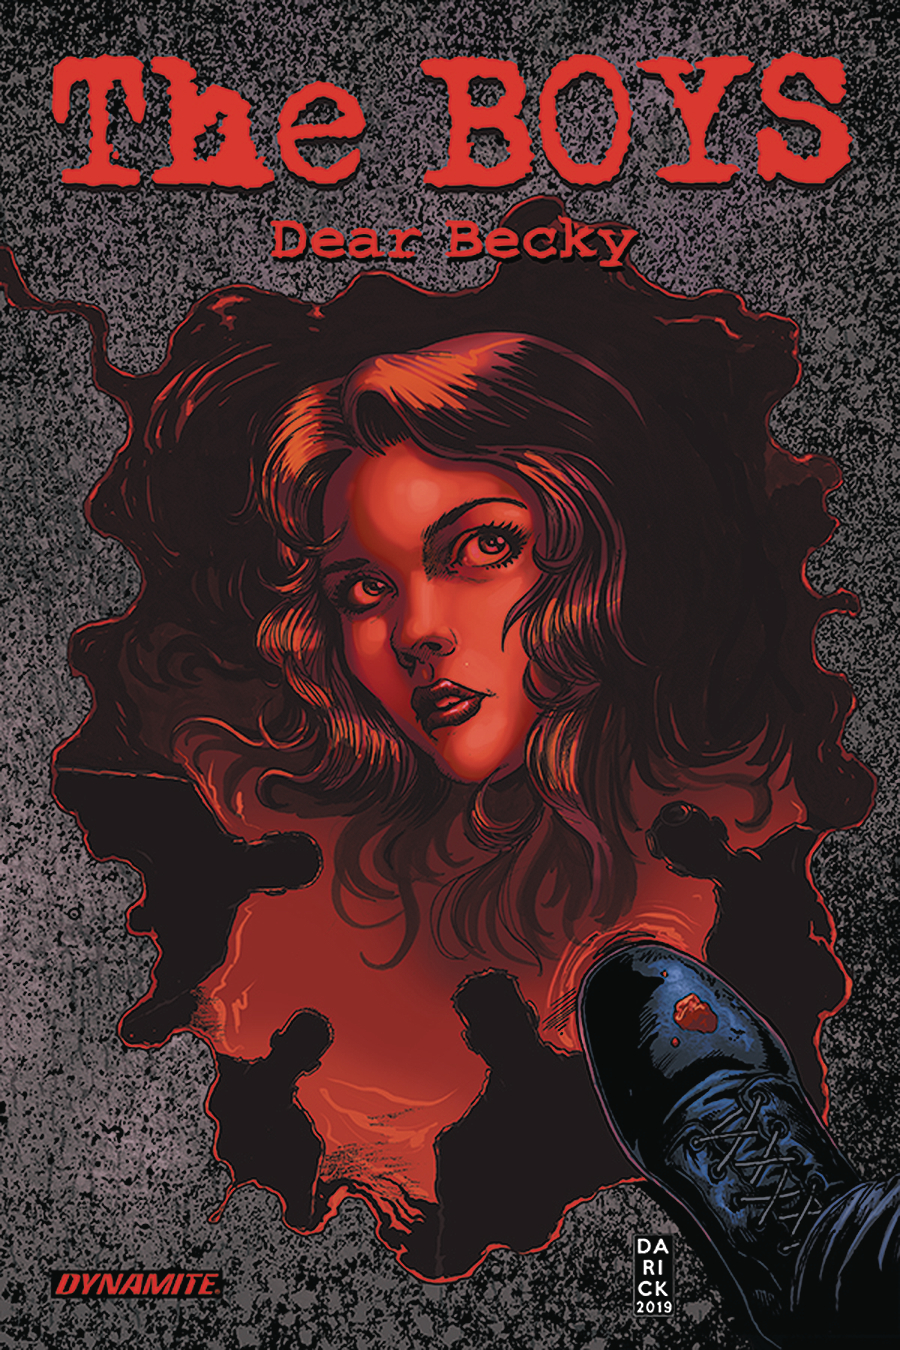 Boys Dear Becky Graphic Novel